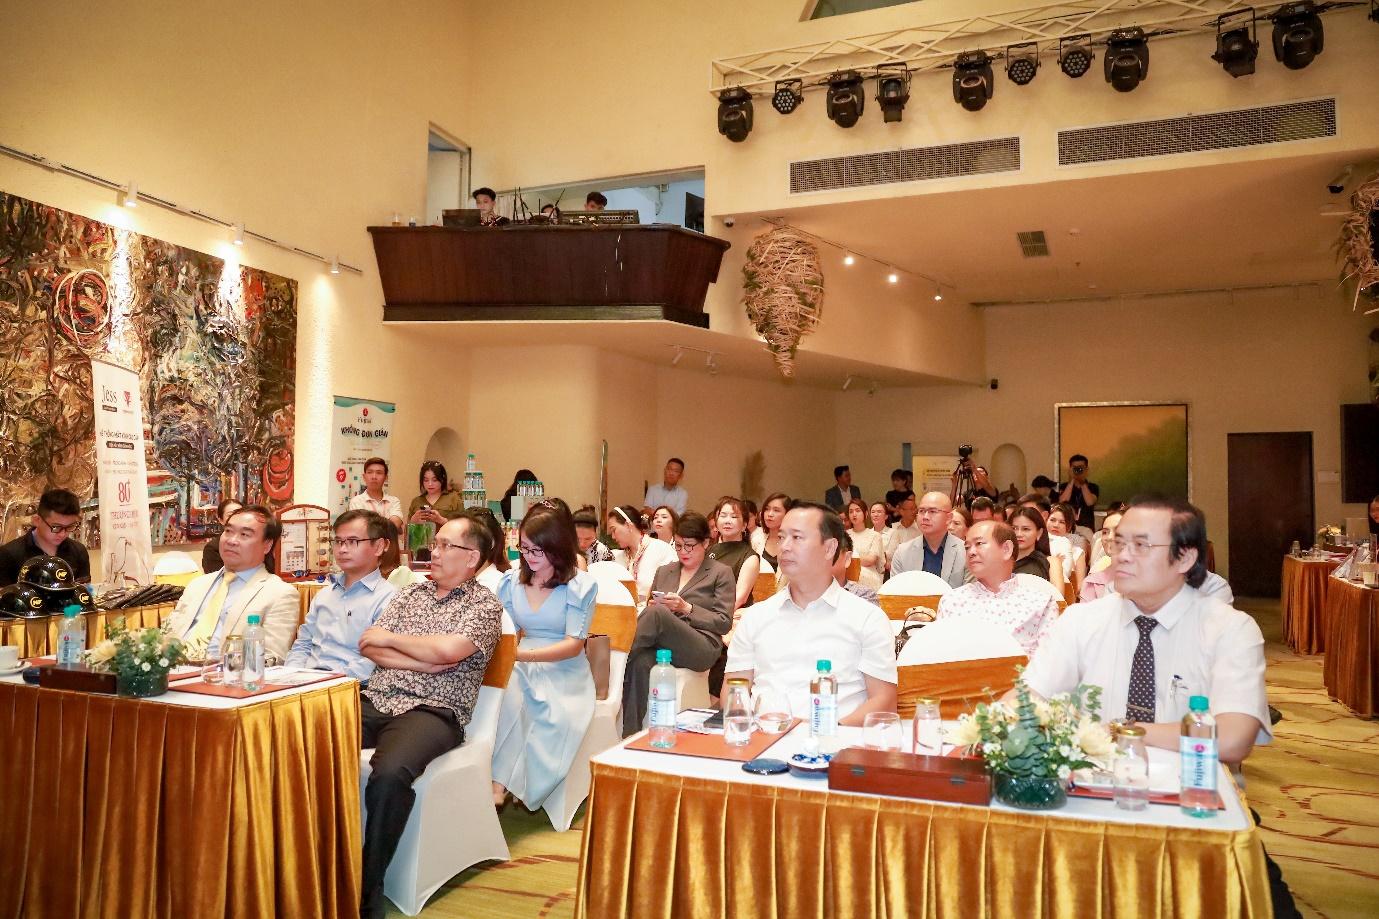 Tọa đàm “Tầm soát sớm ung thư và đột quỵ với công nghệ tiên phong” thu hút nhiều doanh nhân tại TP. Hồ Chí Minh tham dự.